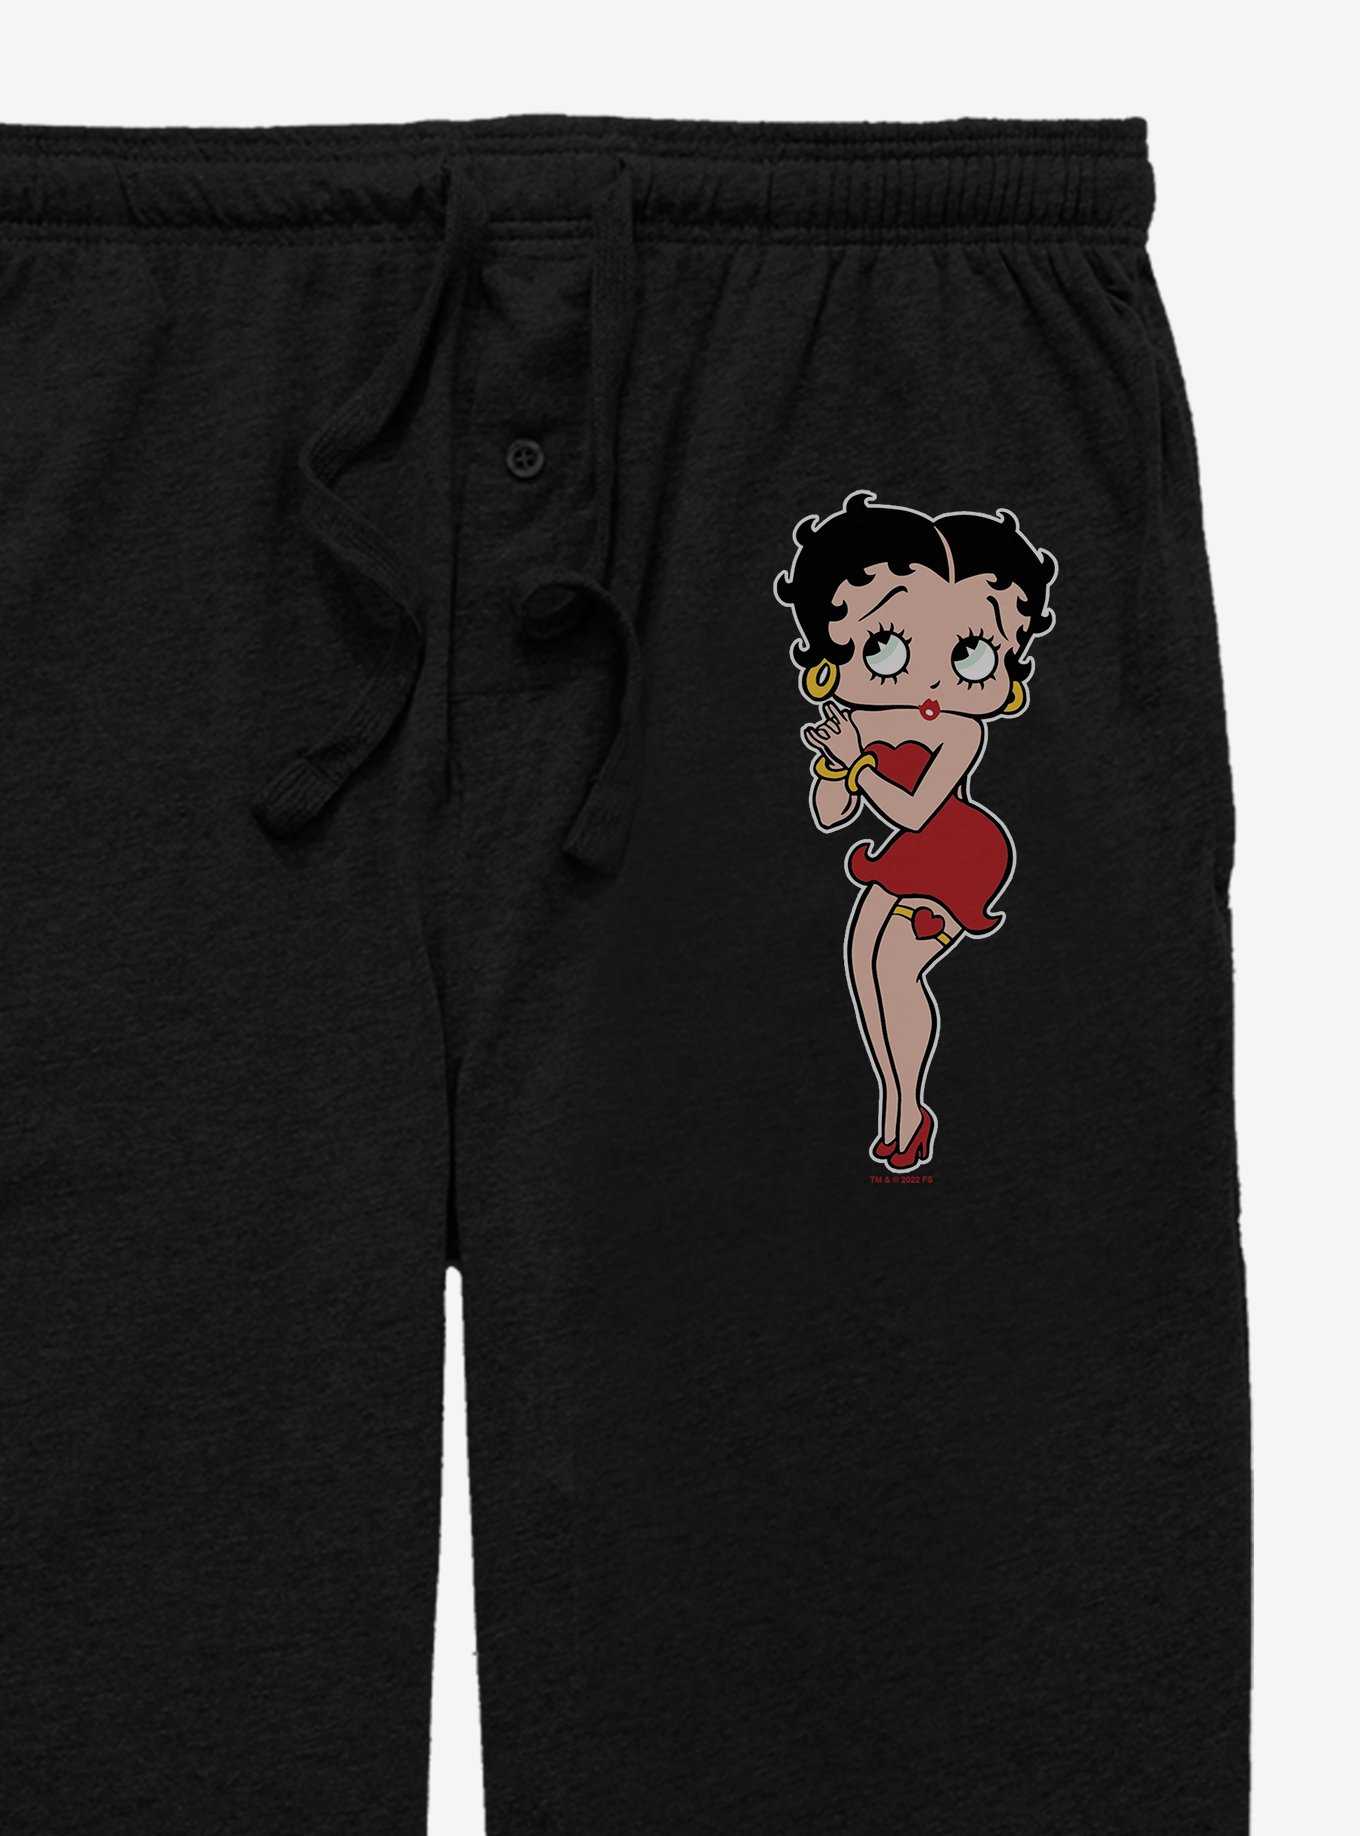 Betty Boop Pose Pajama Pants, , hi-res